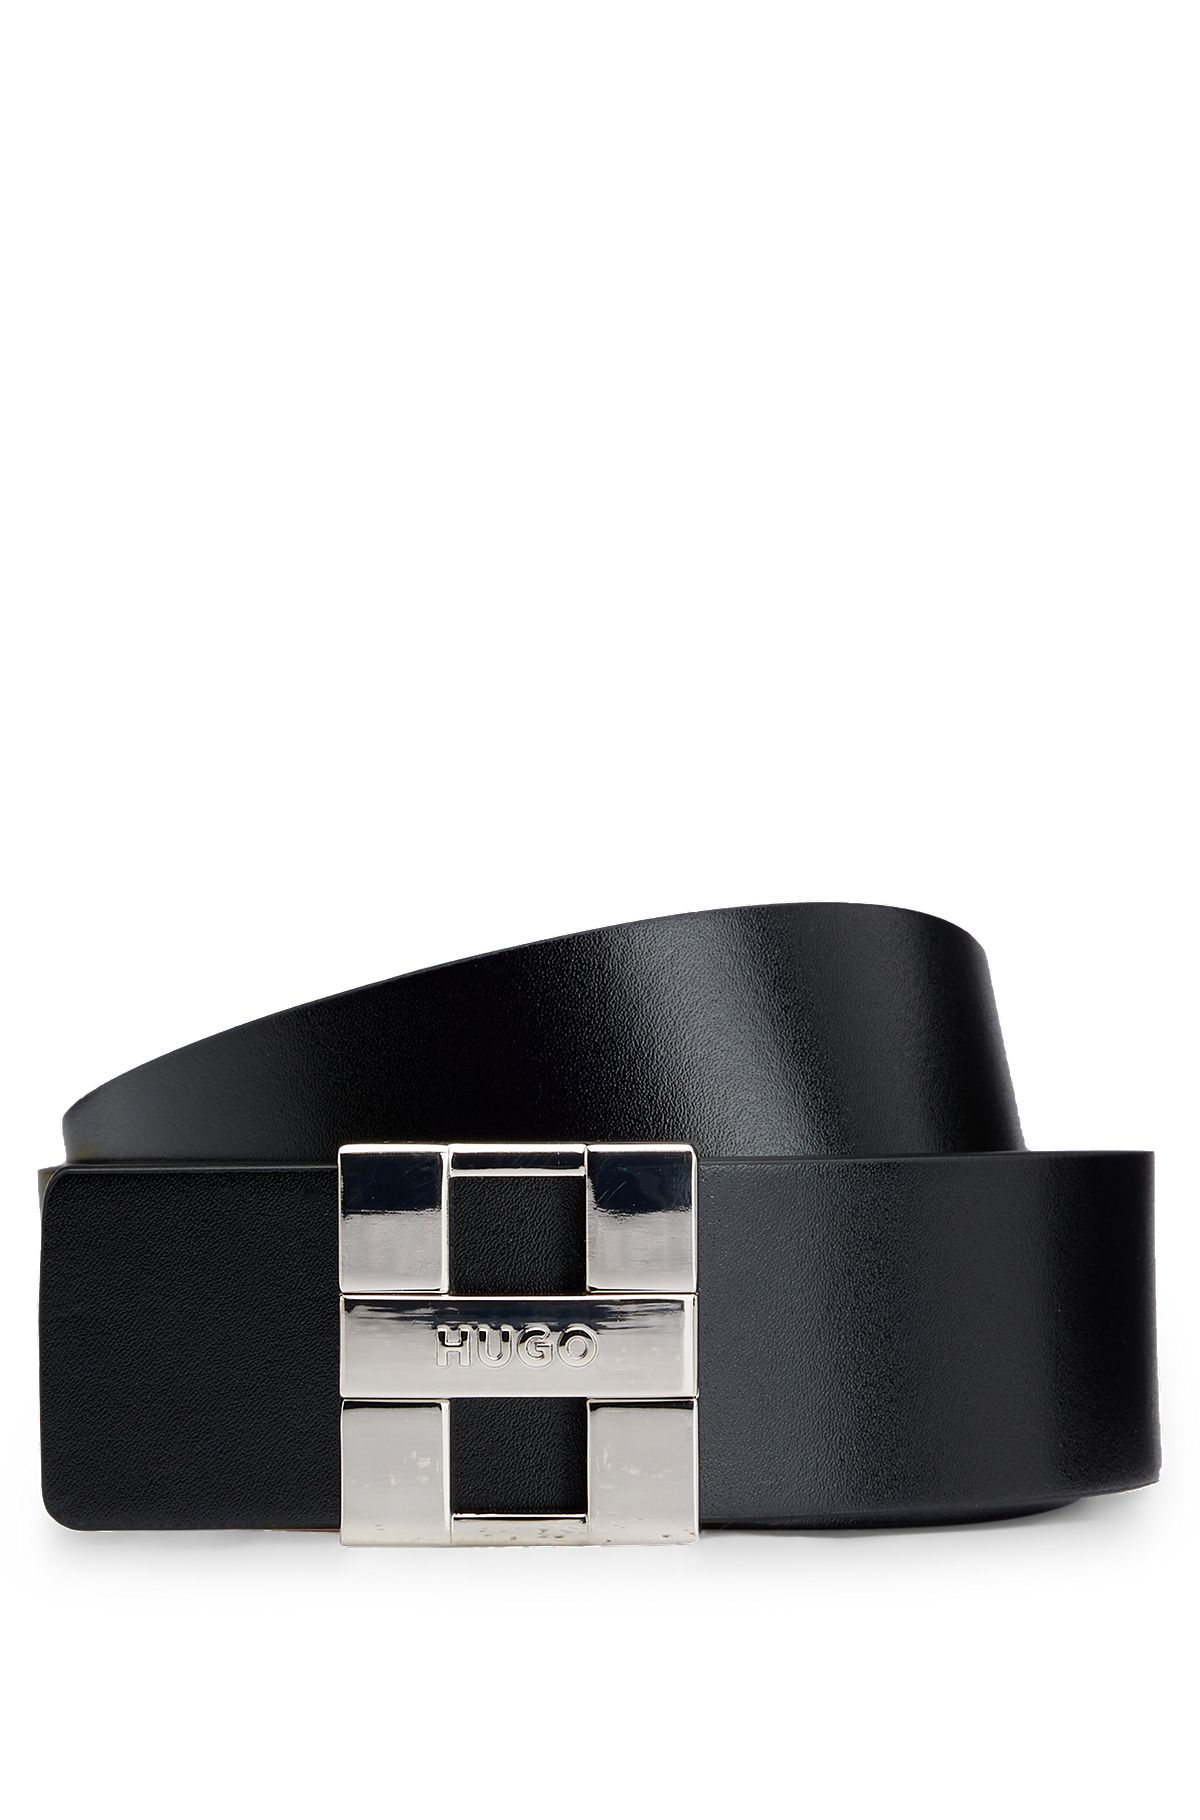 Cintura reversibile in pelle italiana con fibbia con placchetta brandizzata, Nero